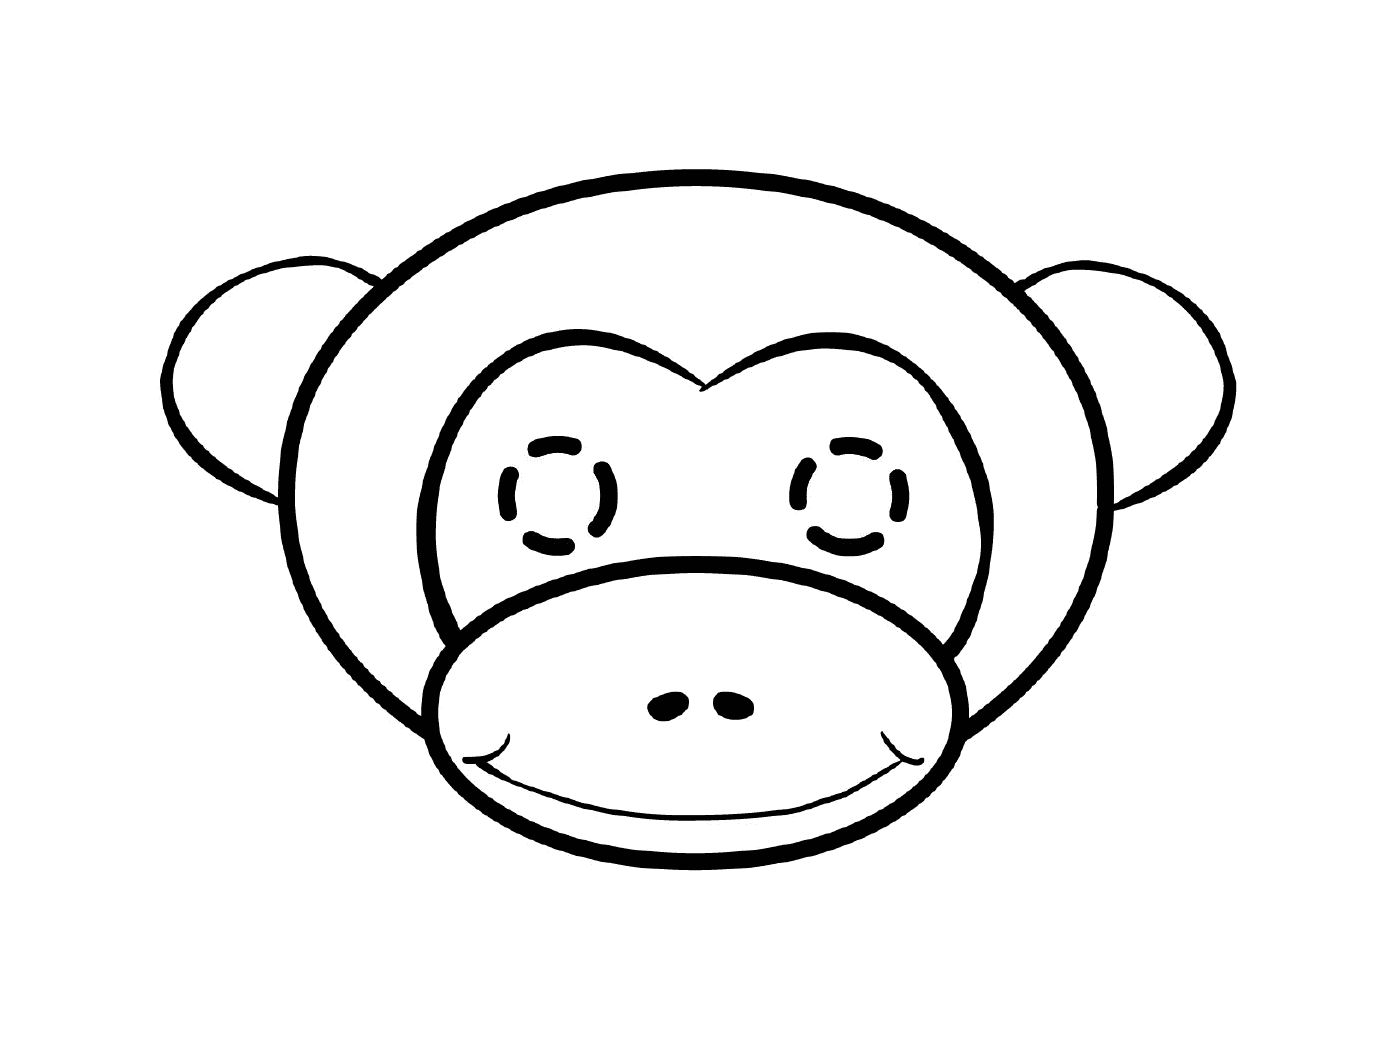  cabeça de macaco adorável 